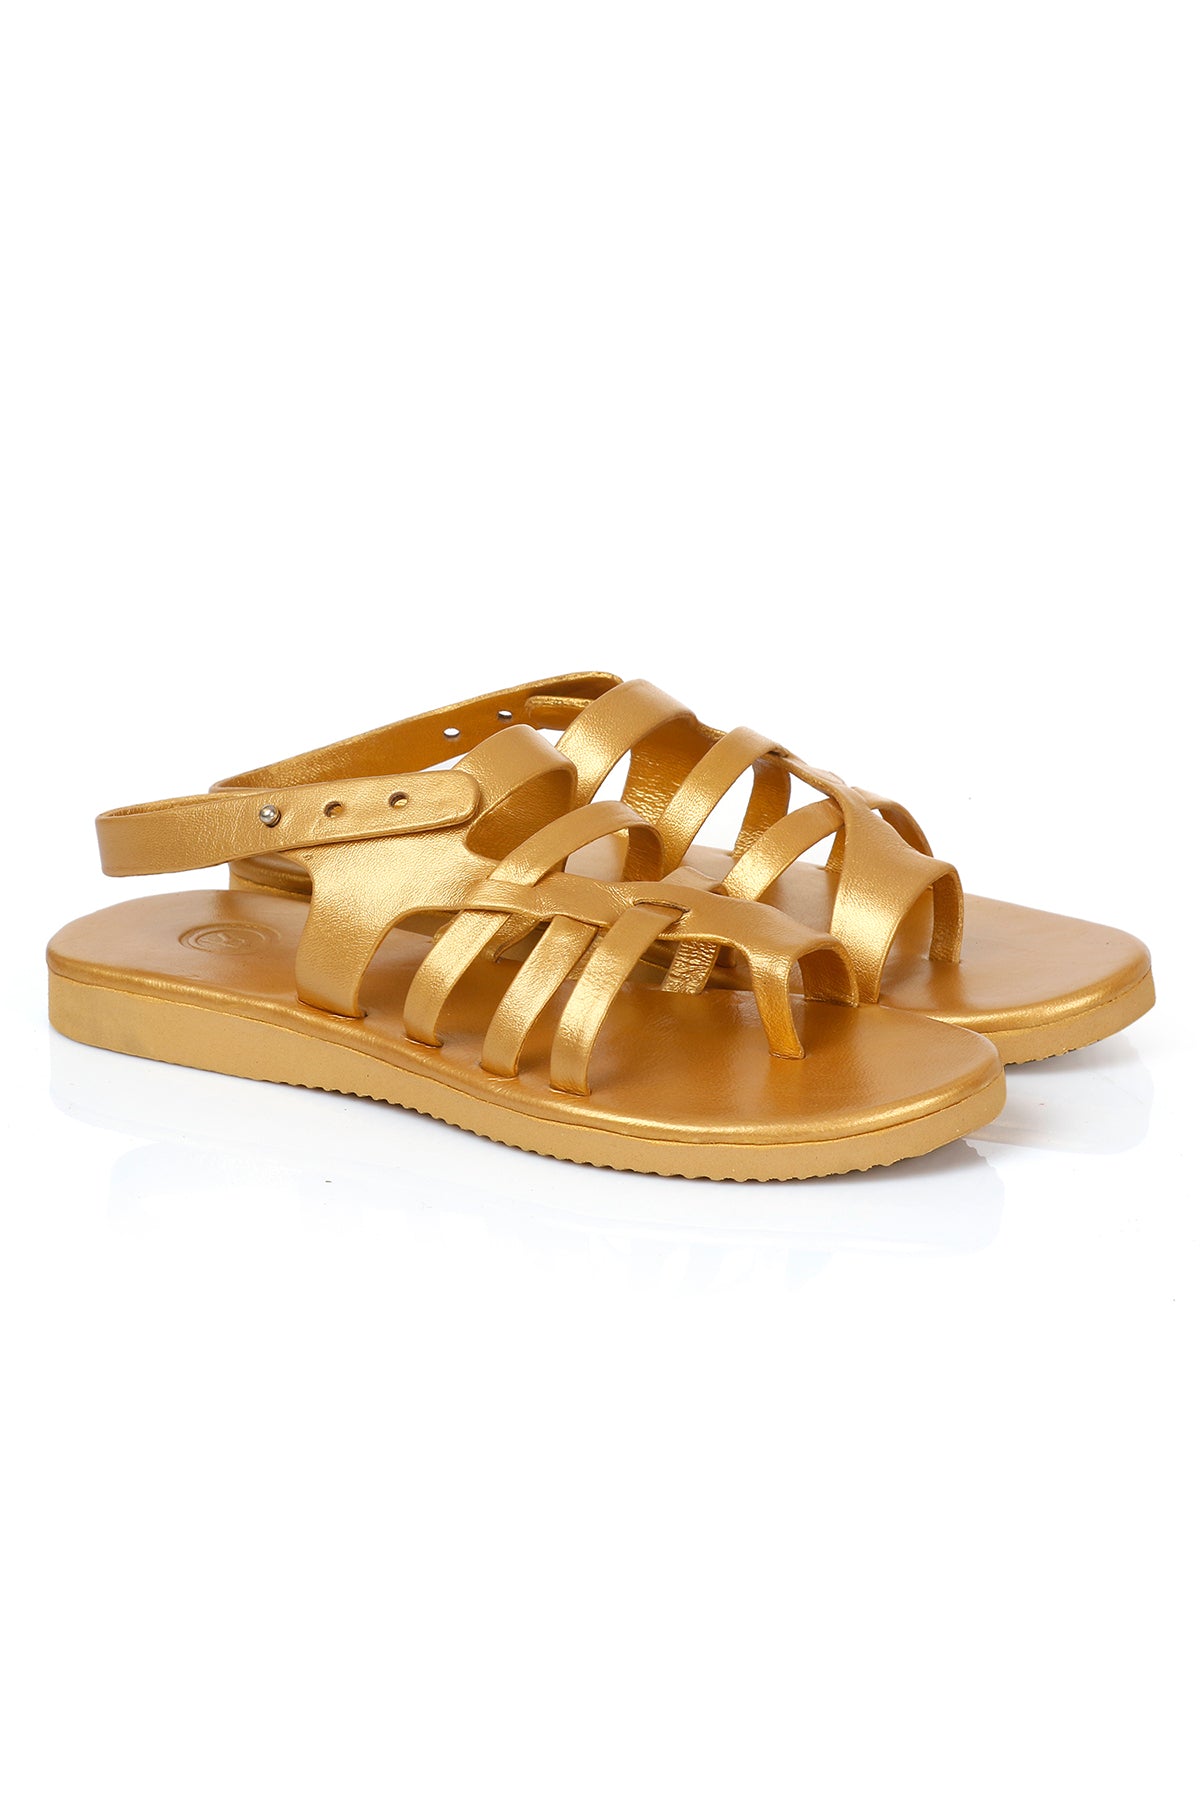 Gold Handmade Sandals